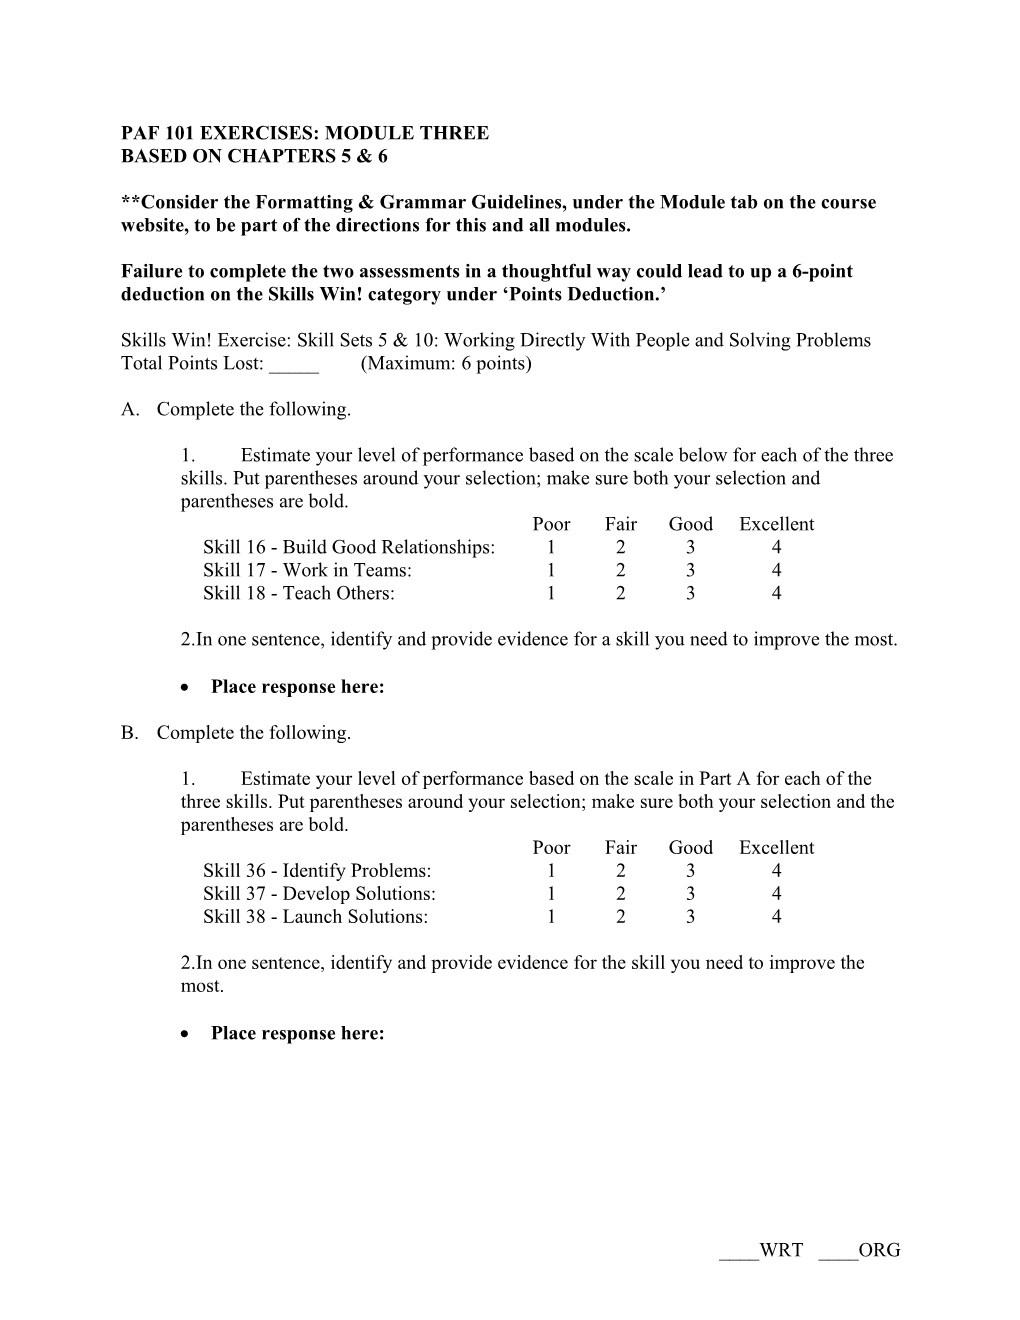 Paf 101 Module 3 Grade Sheet